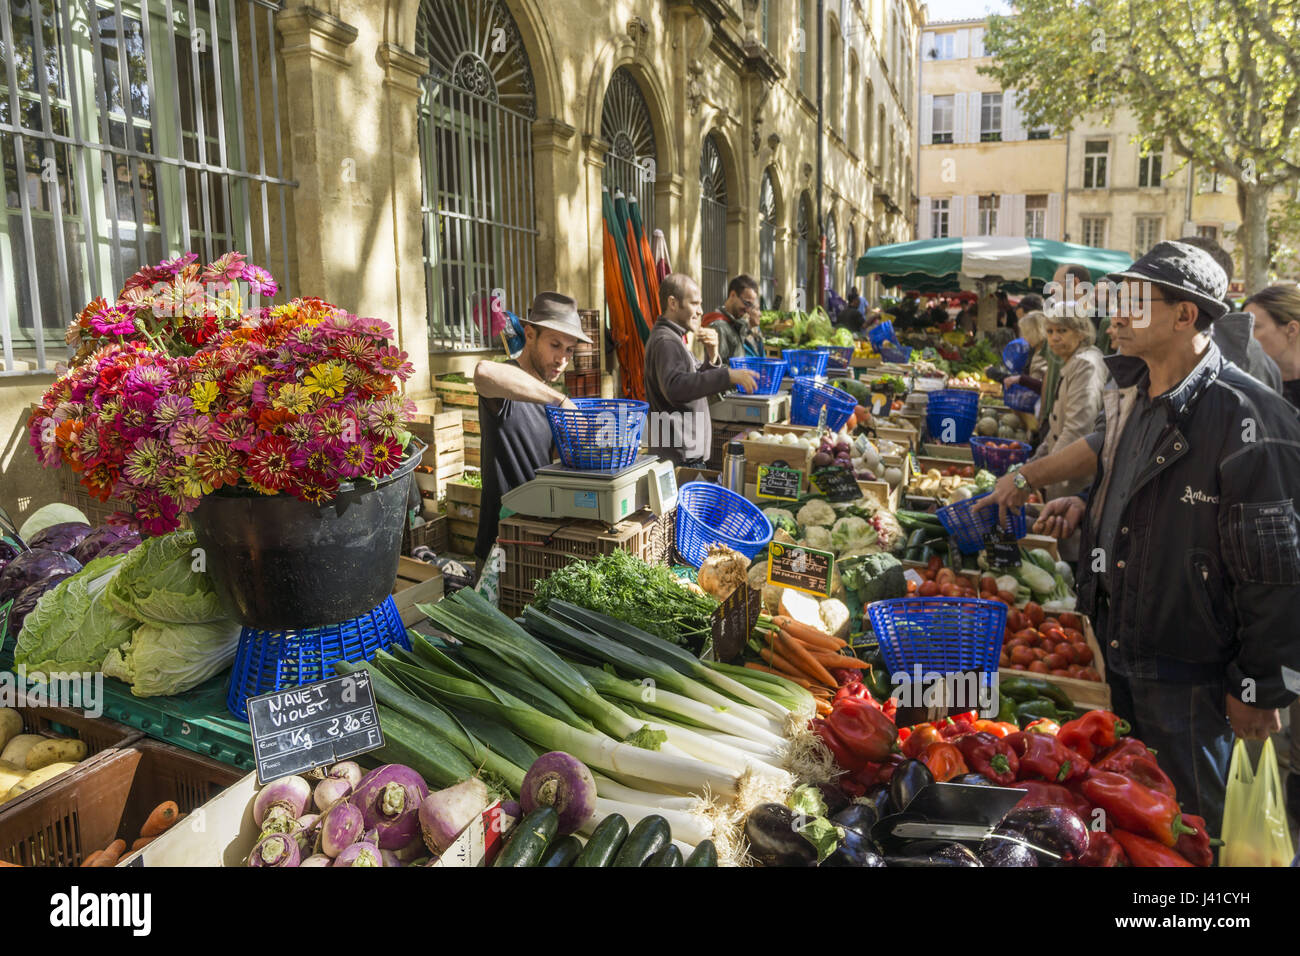 Puesto en el mercado de hortalizas Richelme, Aix en Provence, Bouche Du Rhone, Cote d'Azur, Francia Foto de stock